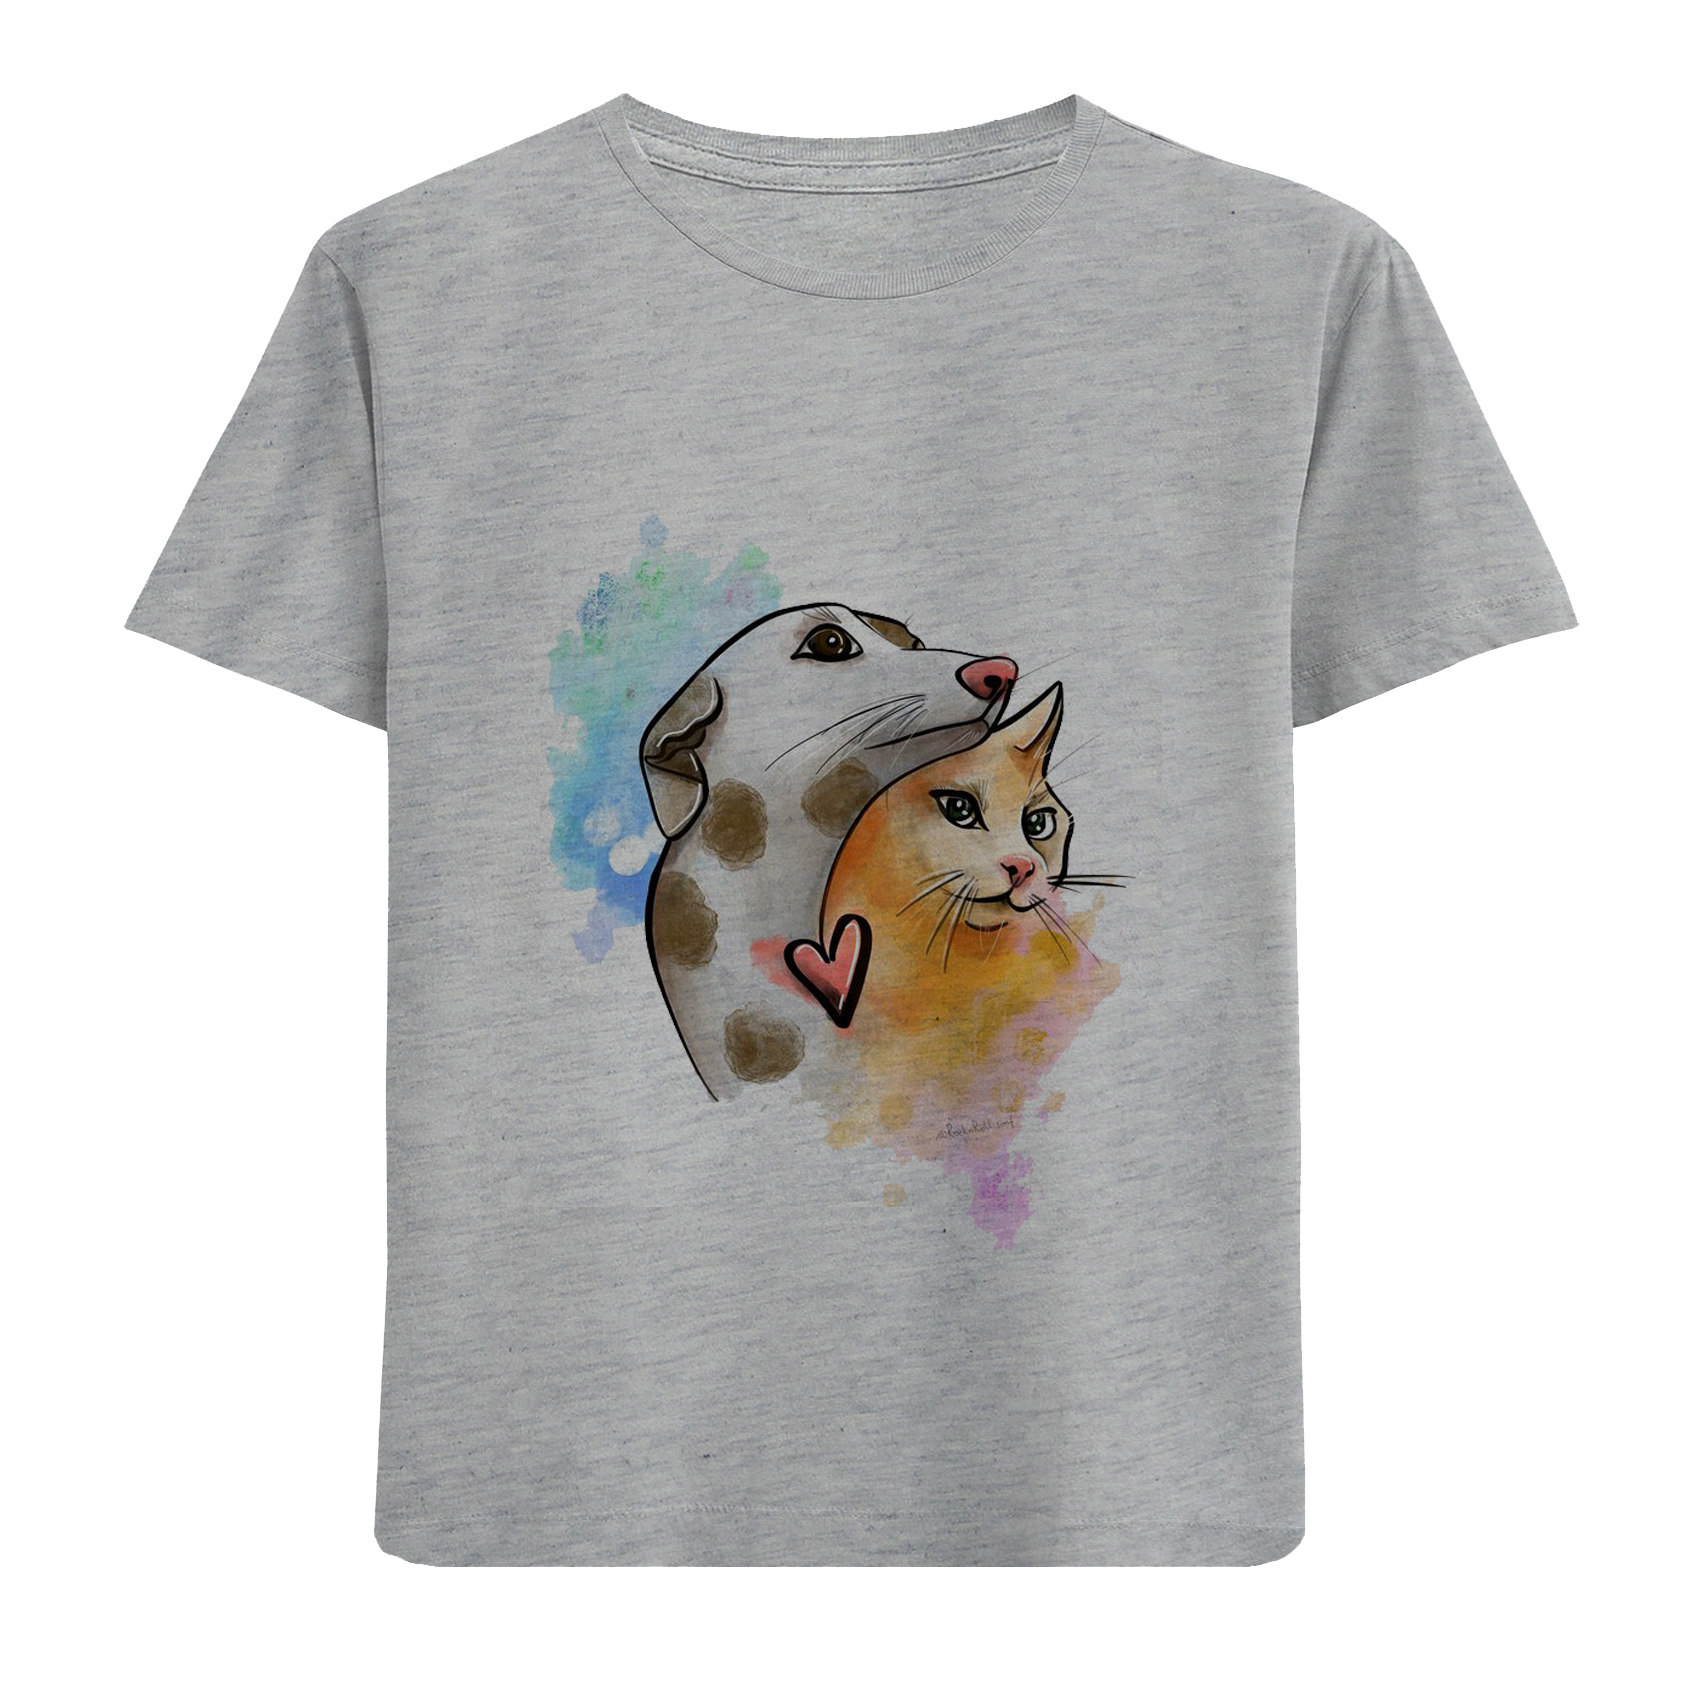 تی شرت آستین کوتاه دخترانه مدل سگ وگربه D246